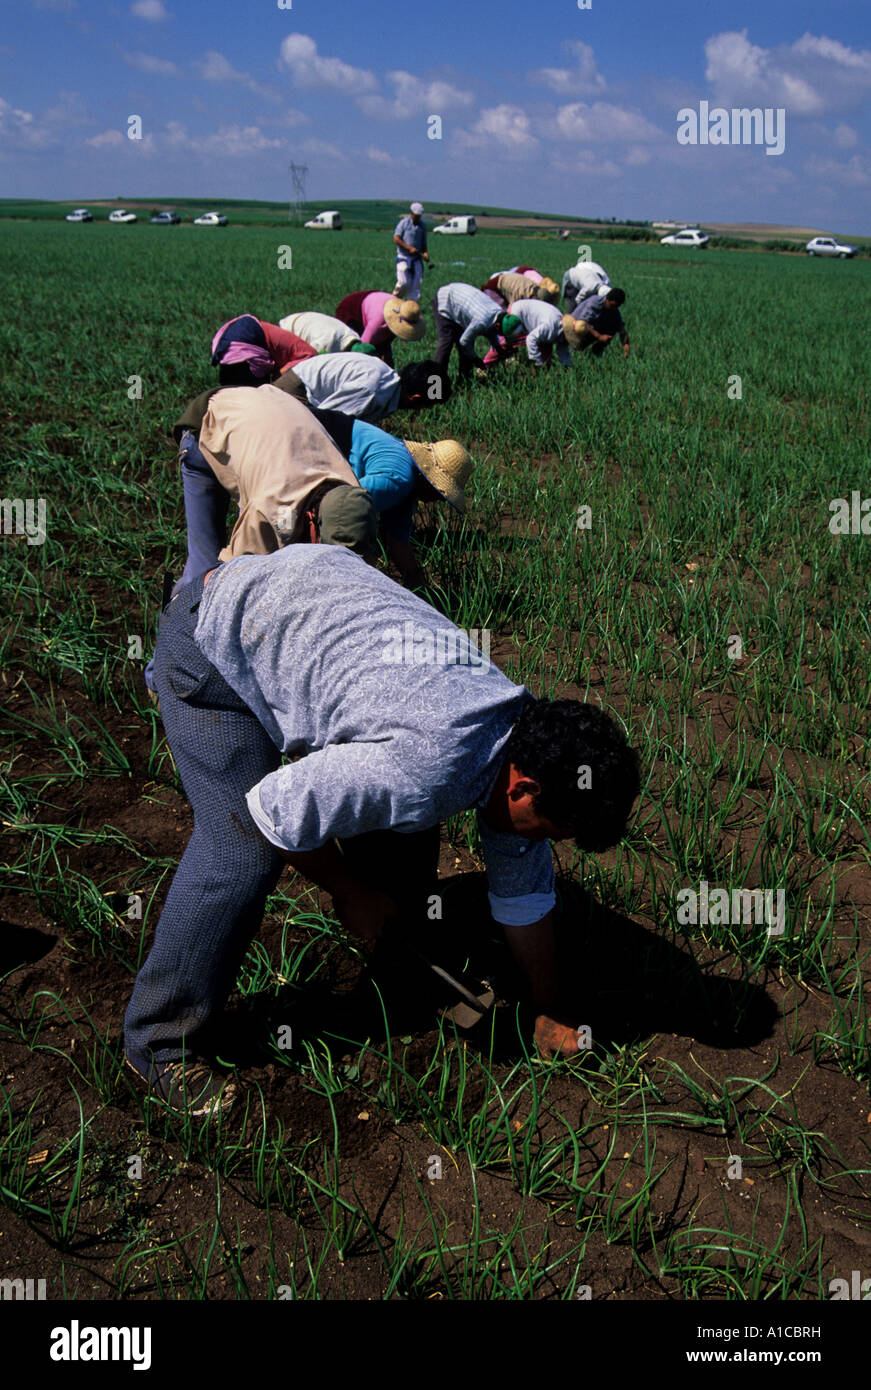 Zwiebelpflanze ernten Spanien Landwirtschaft Einwanderung Arbeit job Stockfoto